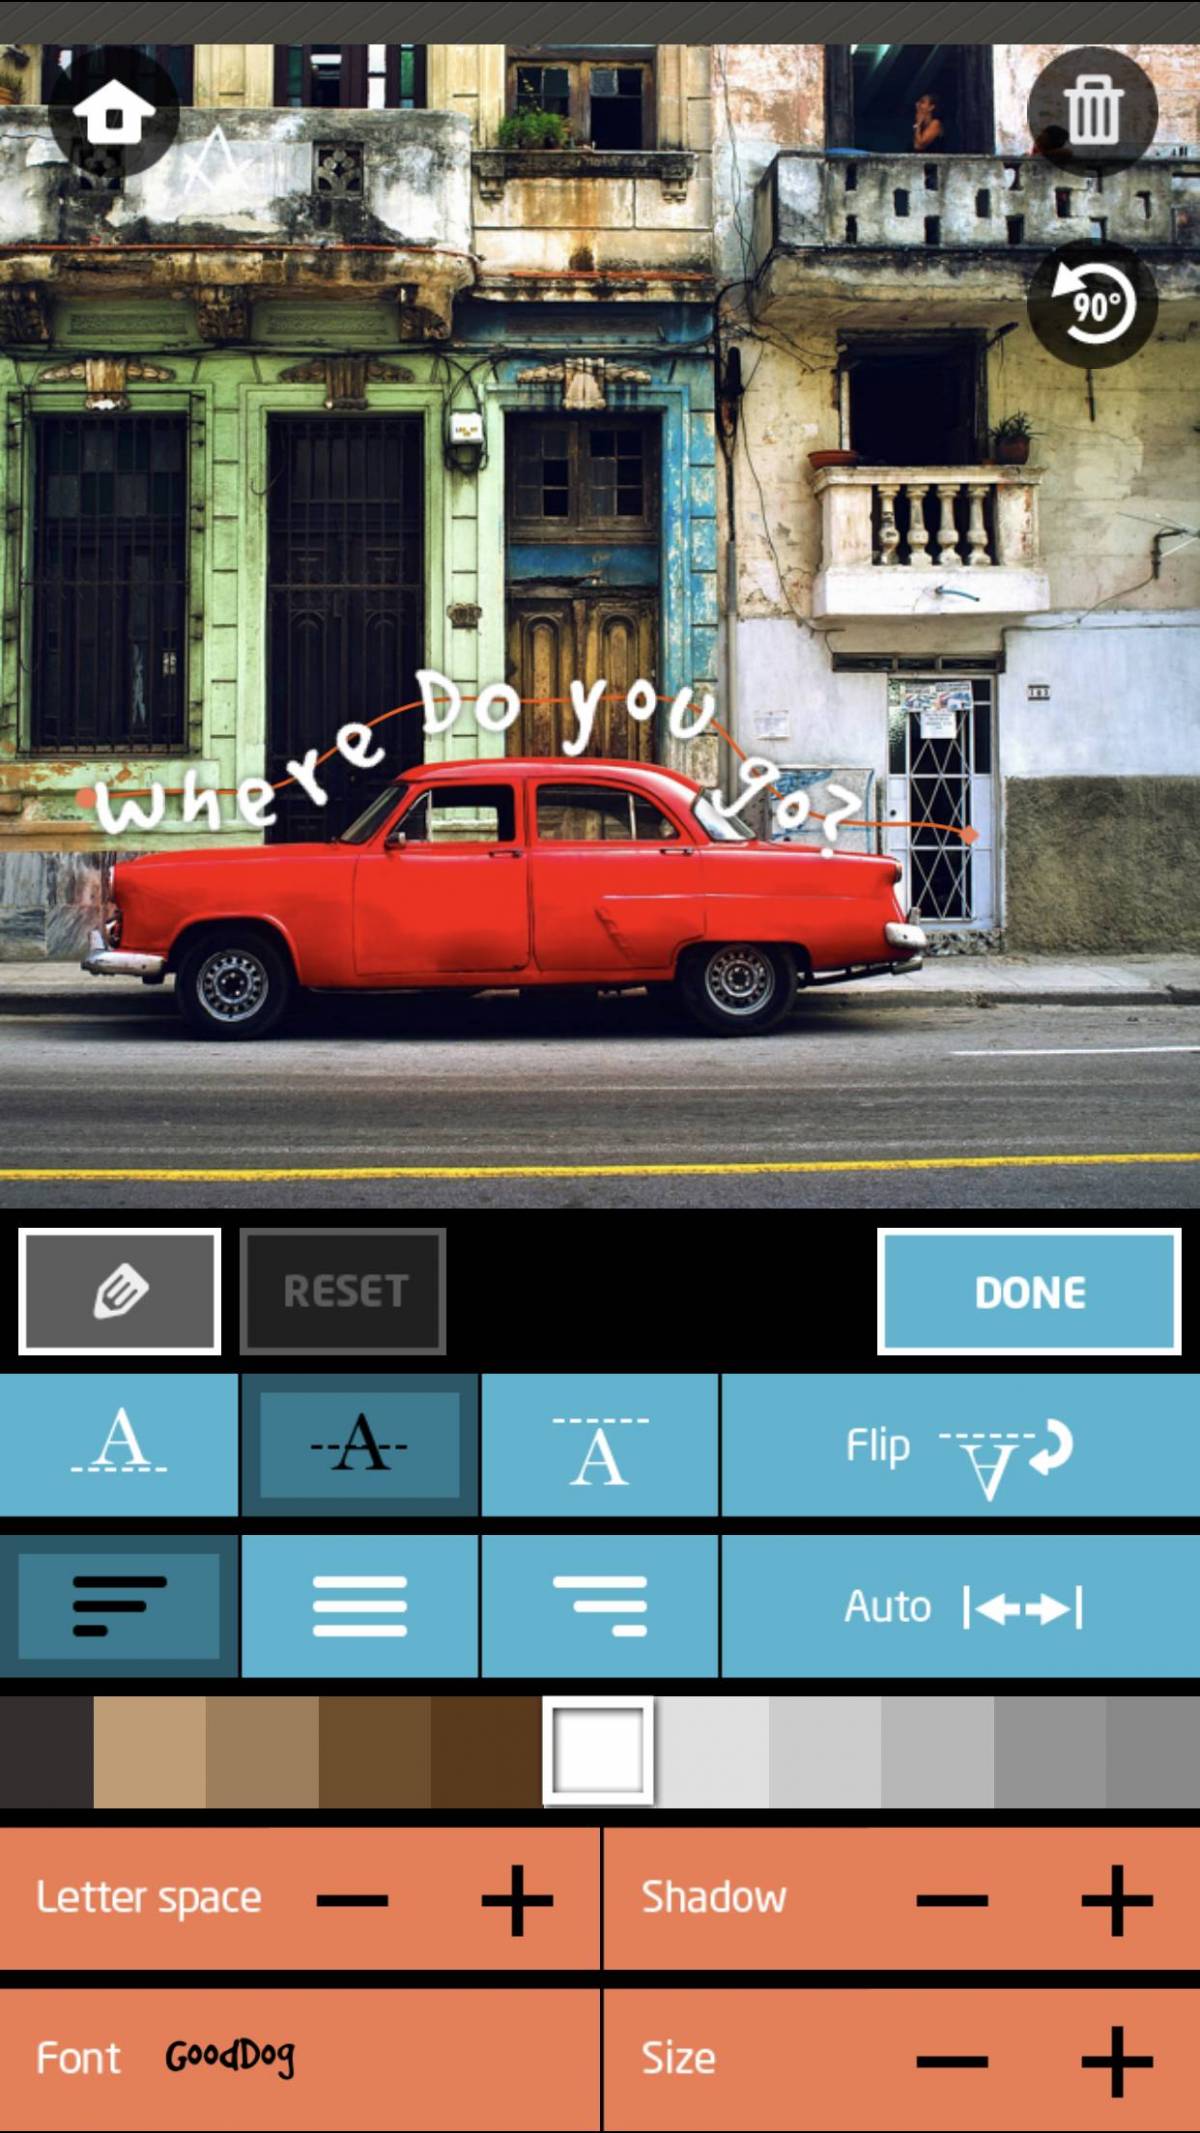 写真に文字入れができるおすすめアプリ9選 可愛い日本語フォントも充実 の画像 17枚目 Appliv Topics